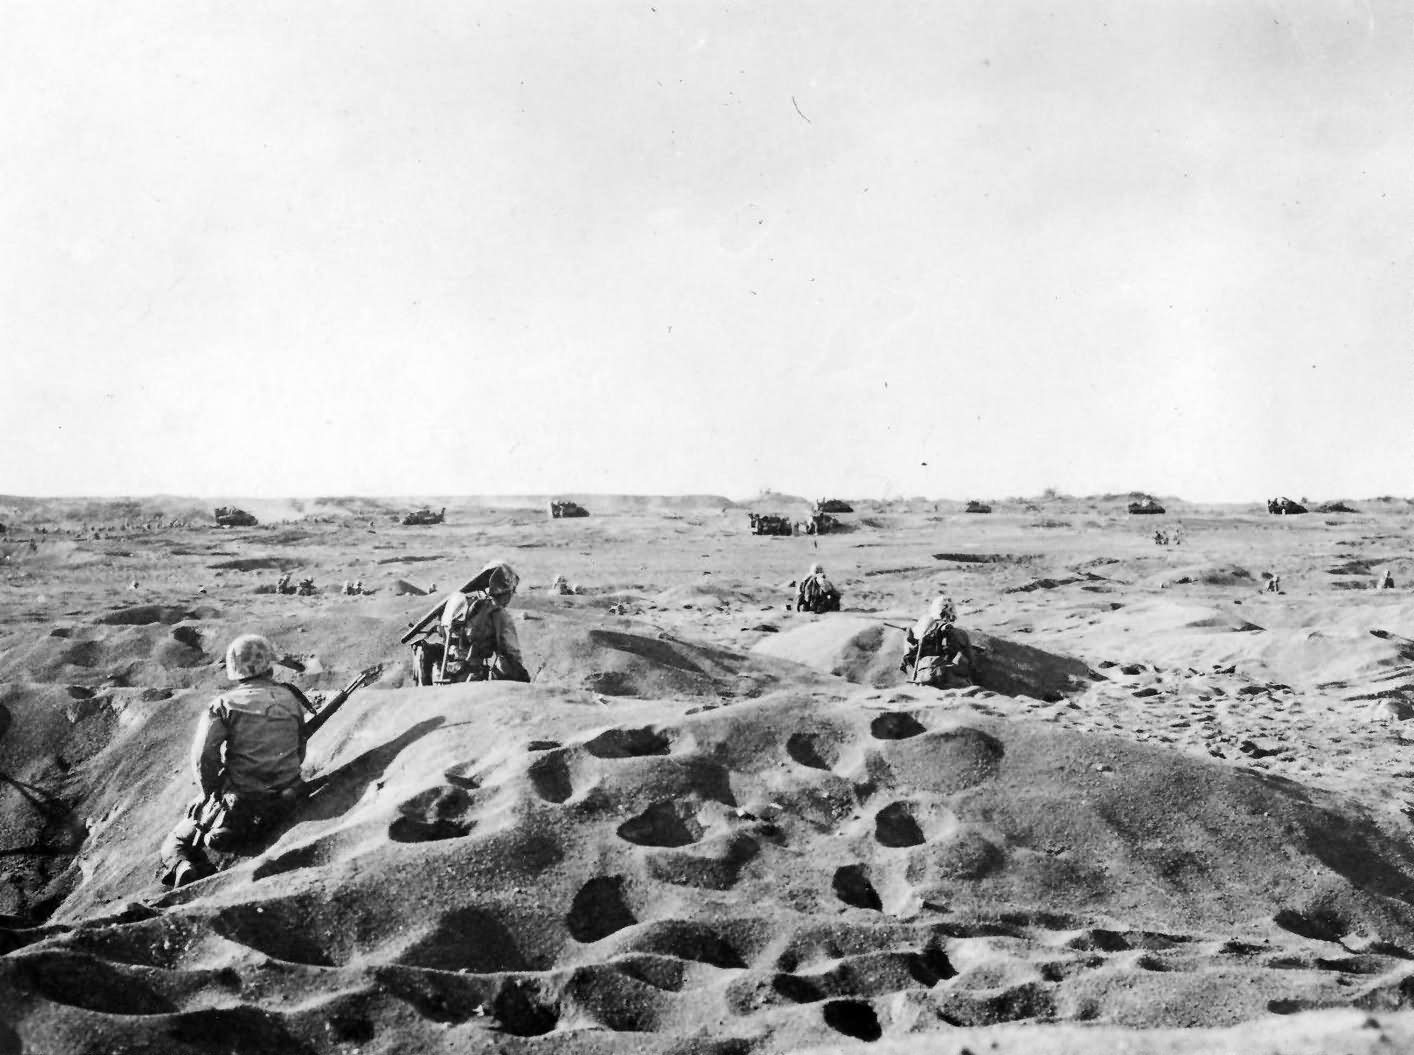 Iwo Jima Marines advancing